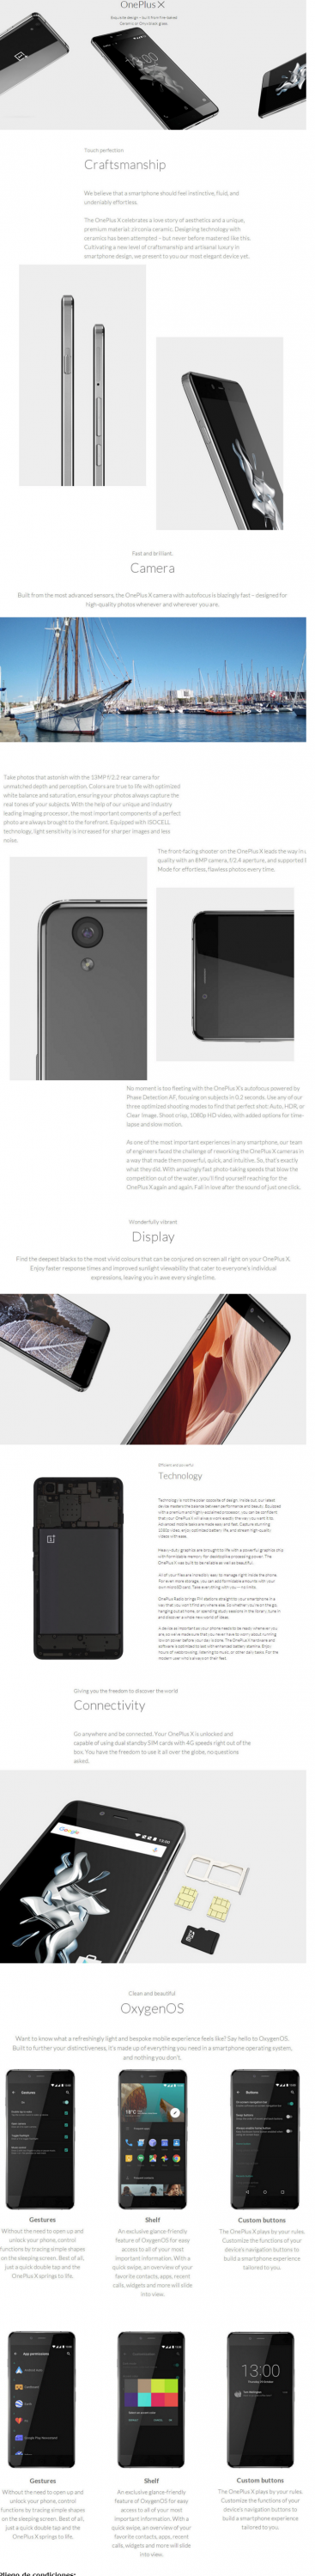 Infografía OnePlus X el mejor móvil Android chino de gama media y asequible